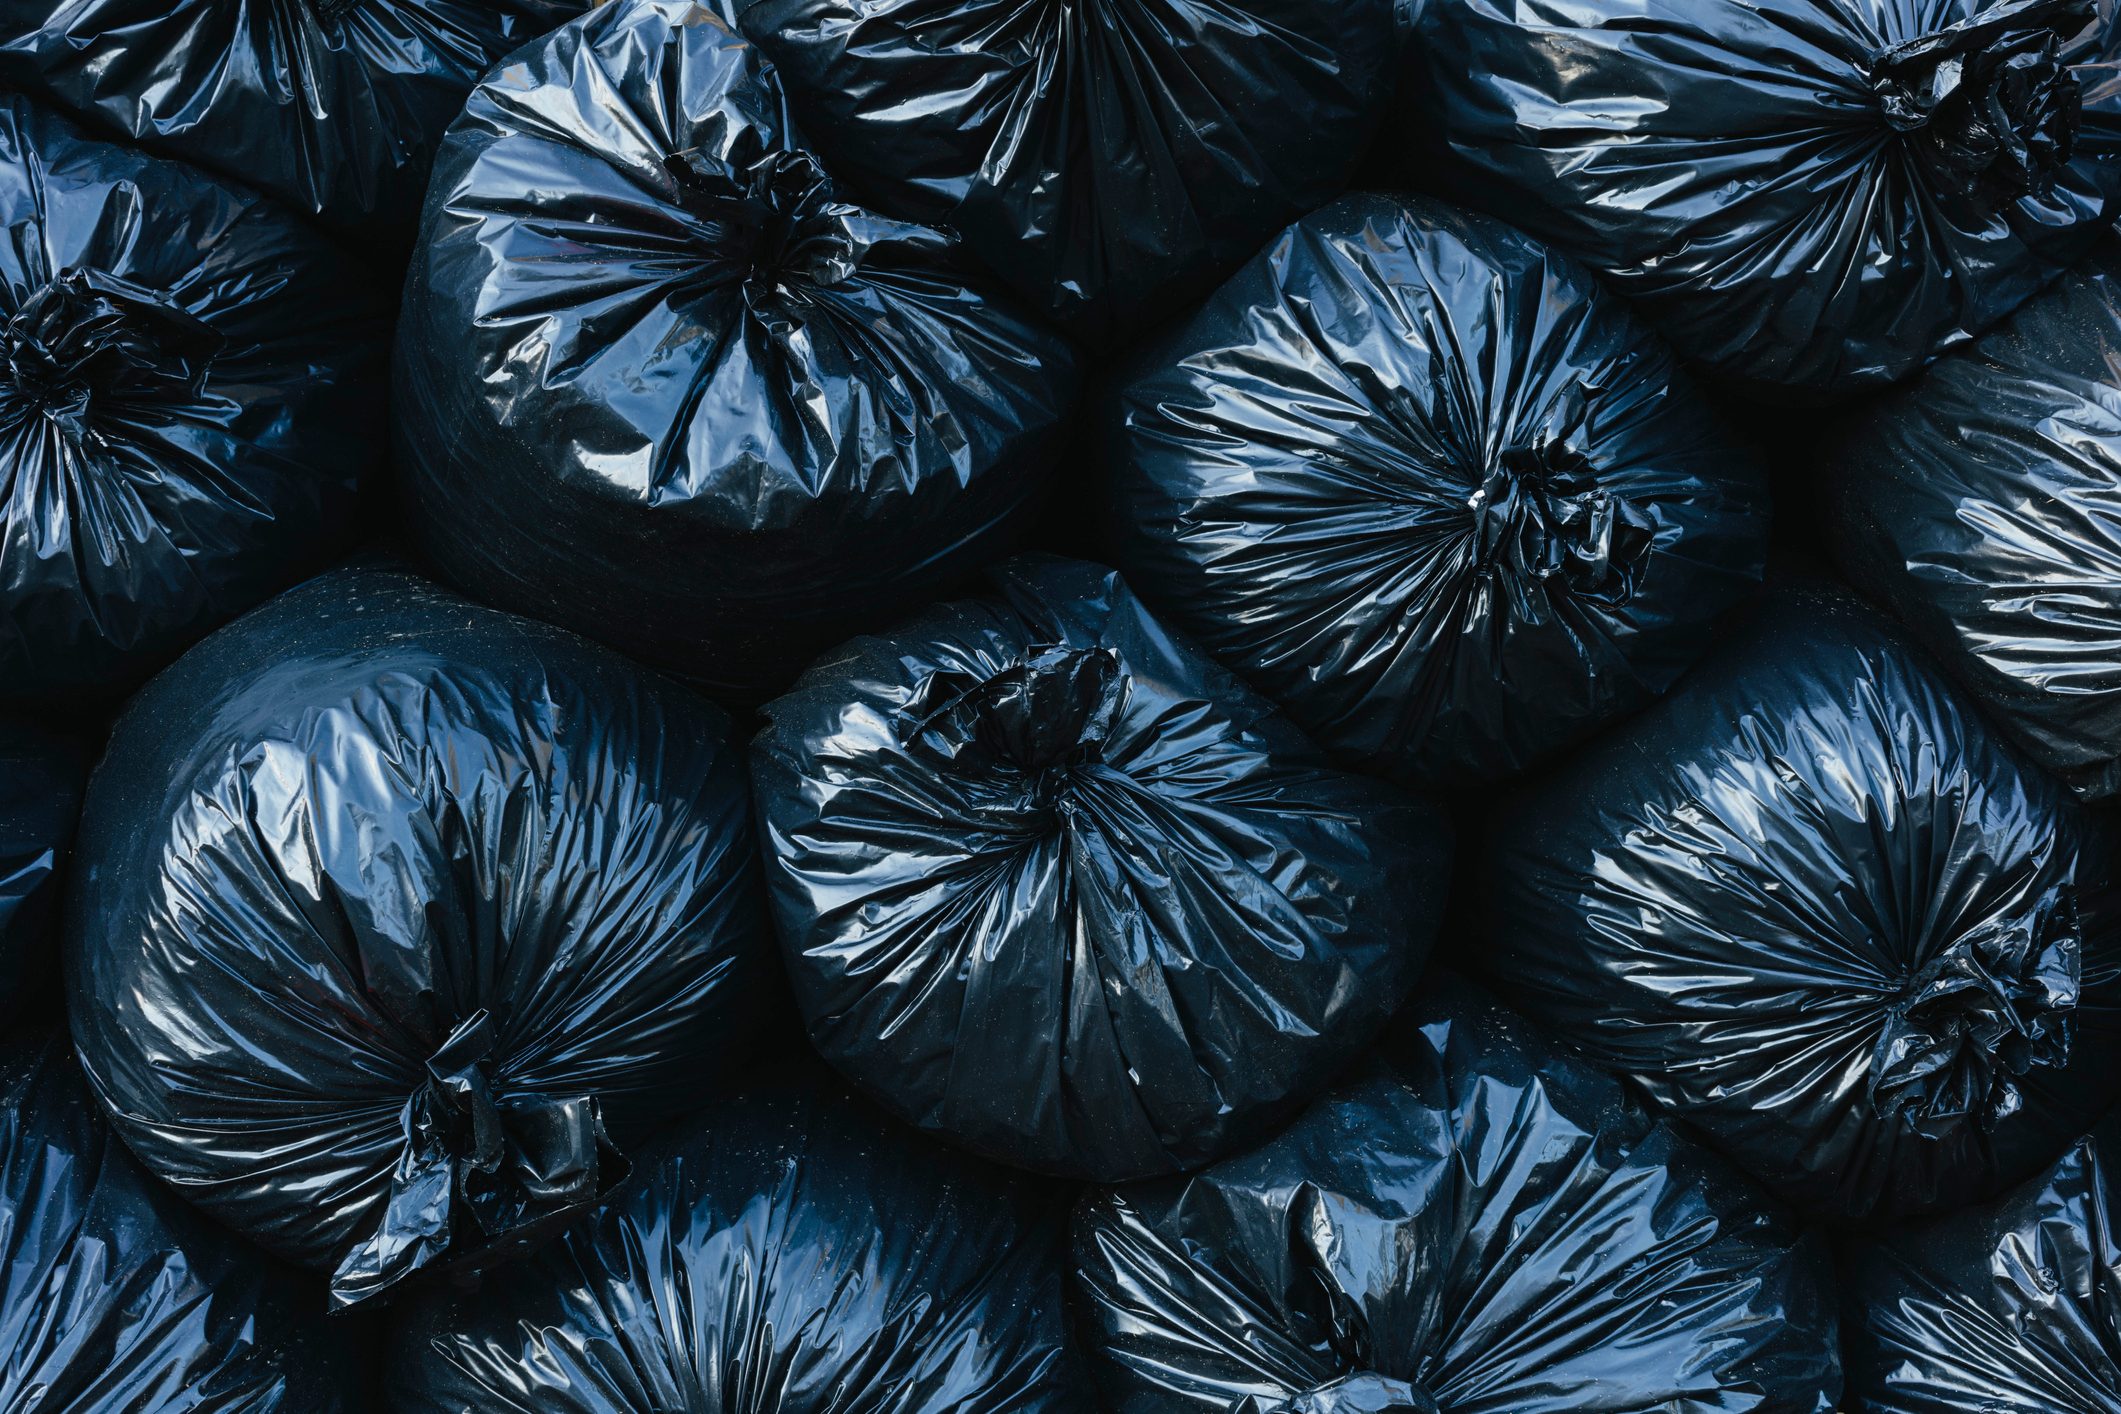 Pile of black plastic garbage bags.